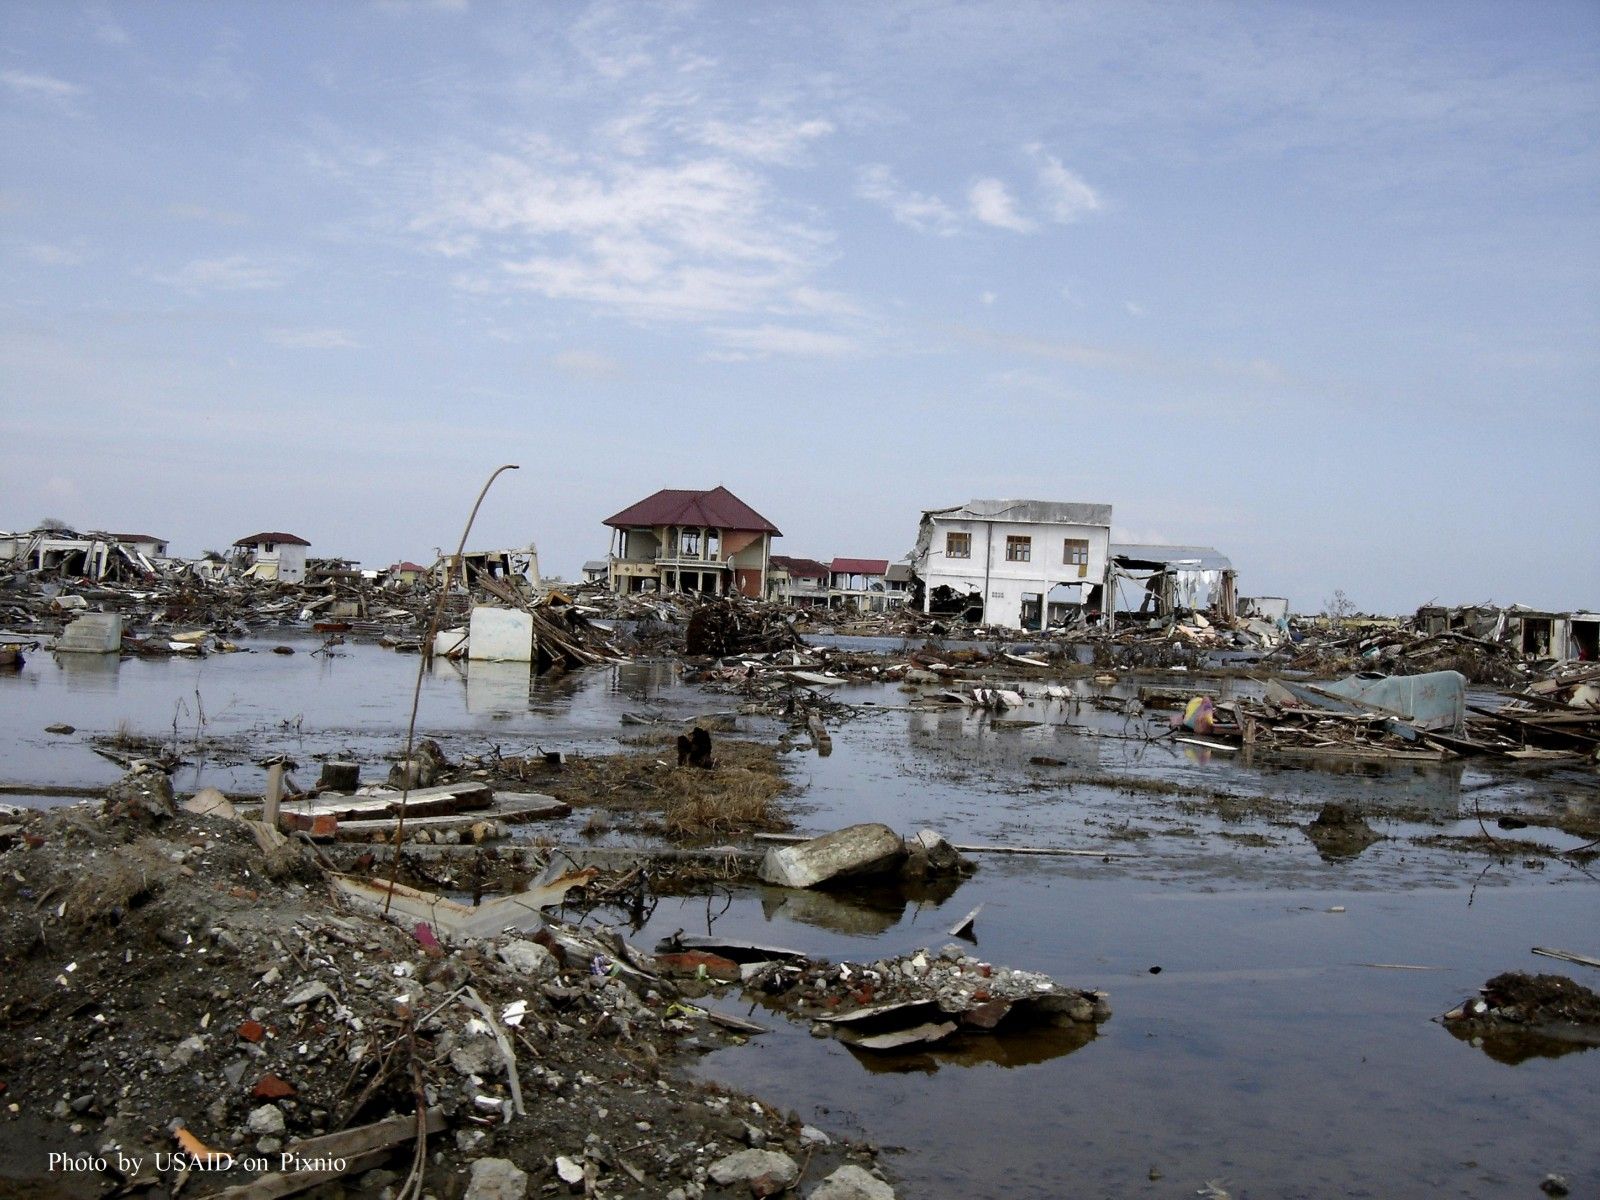 tsunami - Photo by USAID on Pixnio